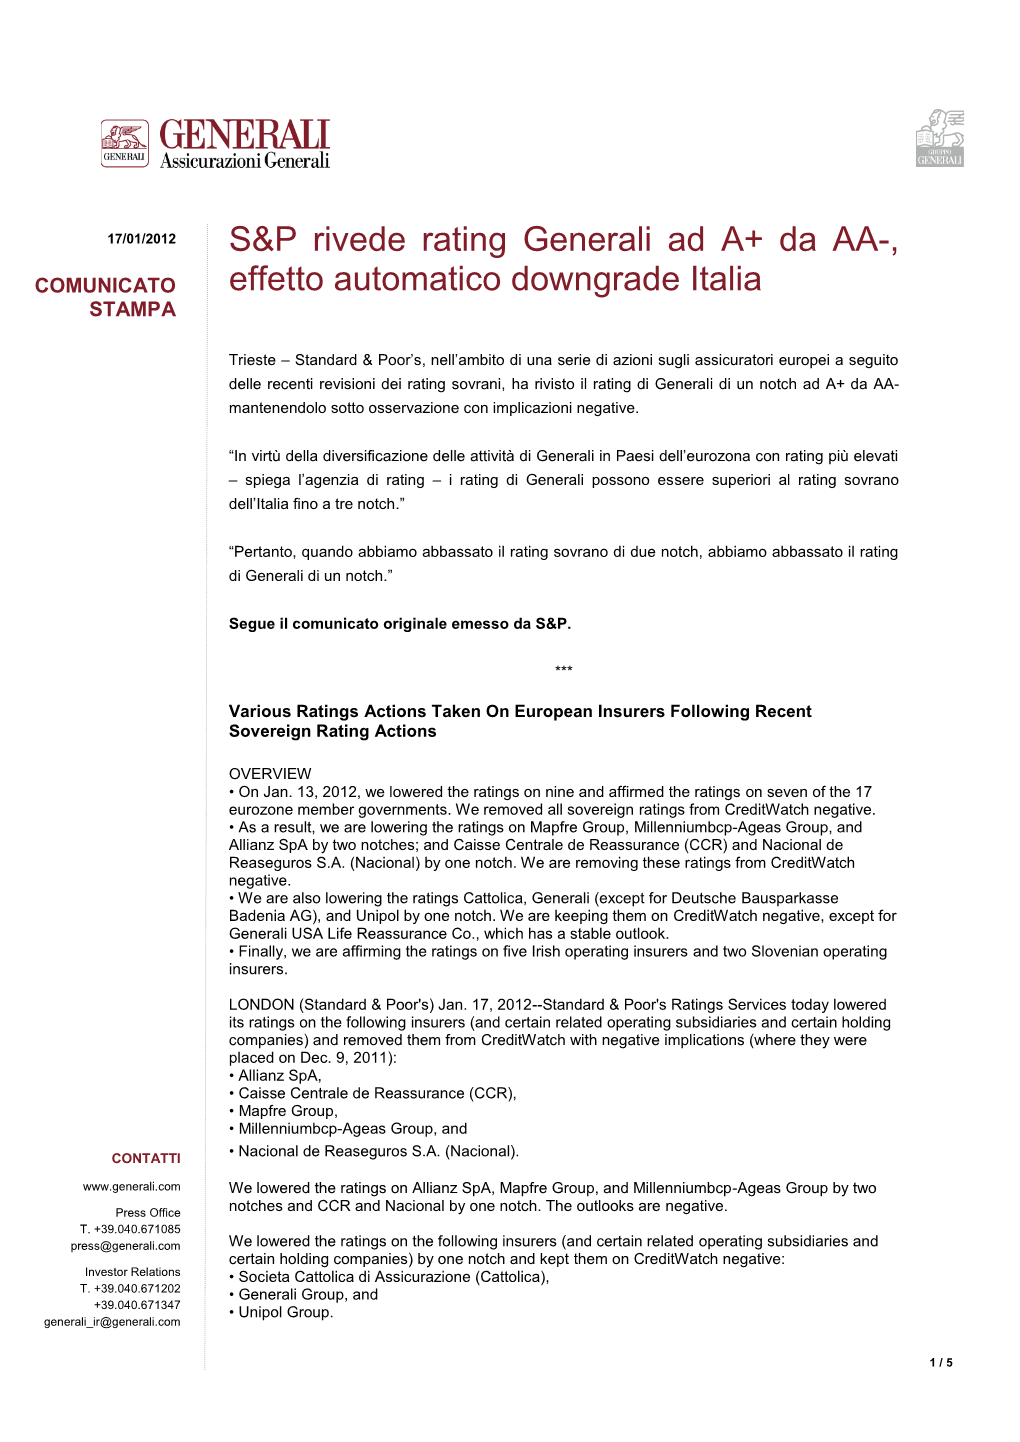 S&P Rivede Rating Generali Ad A+ Da AA-, Effetto Automatico Downgrade